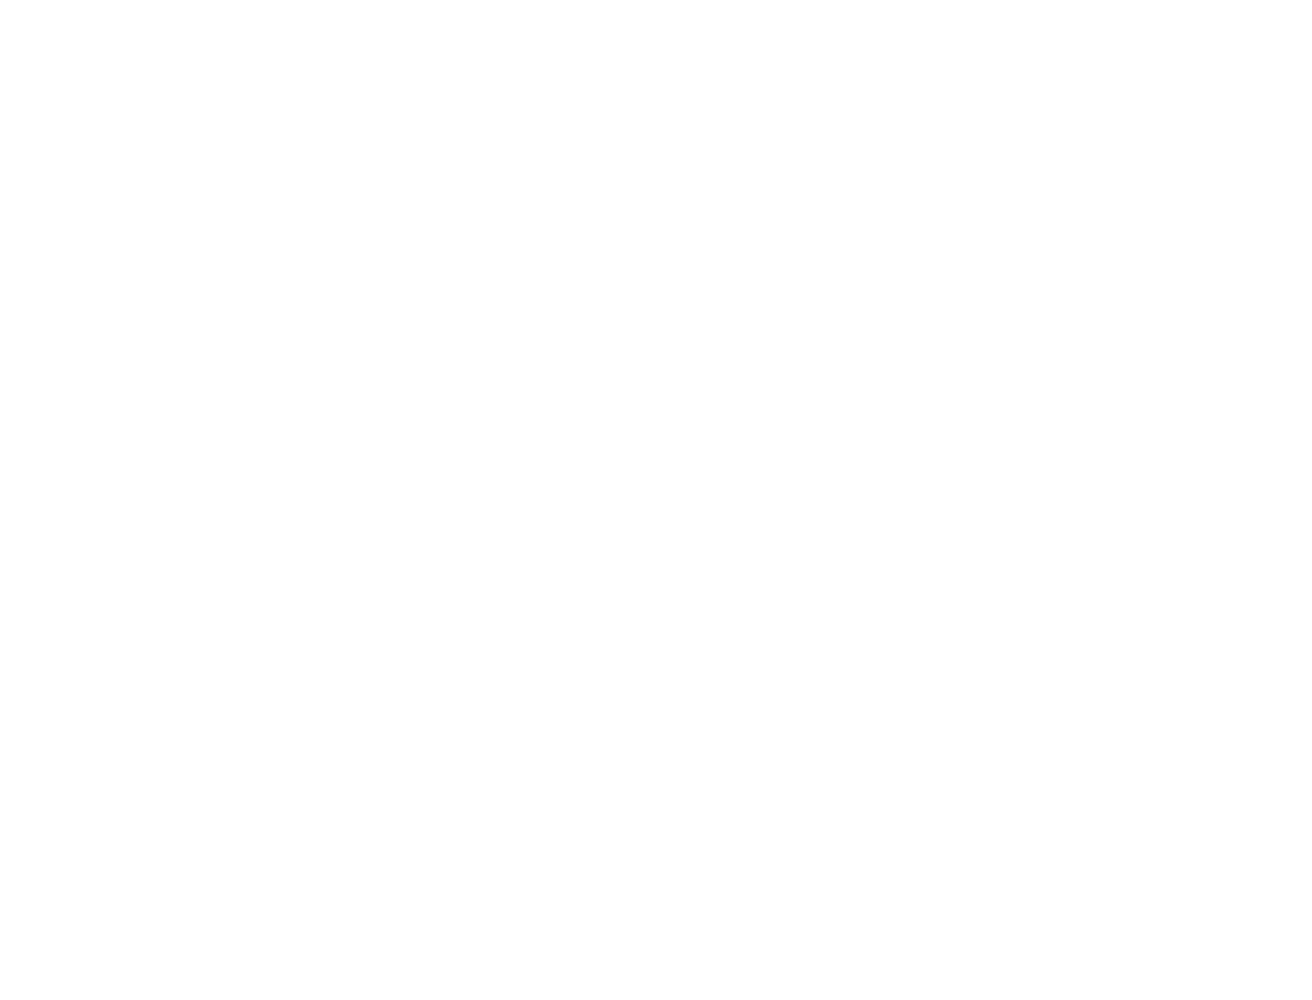 Band NFTs